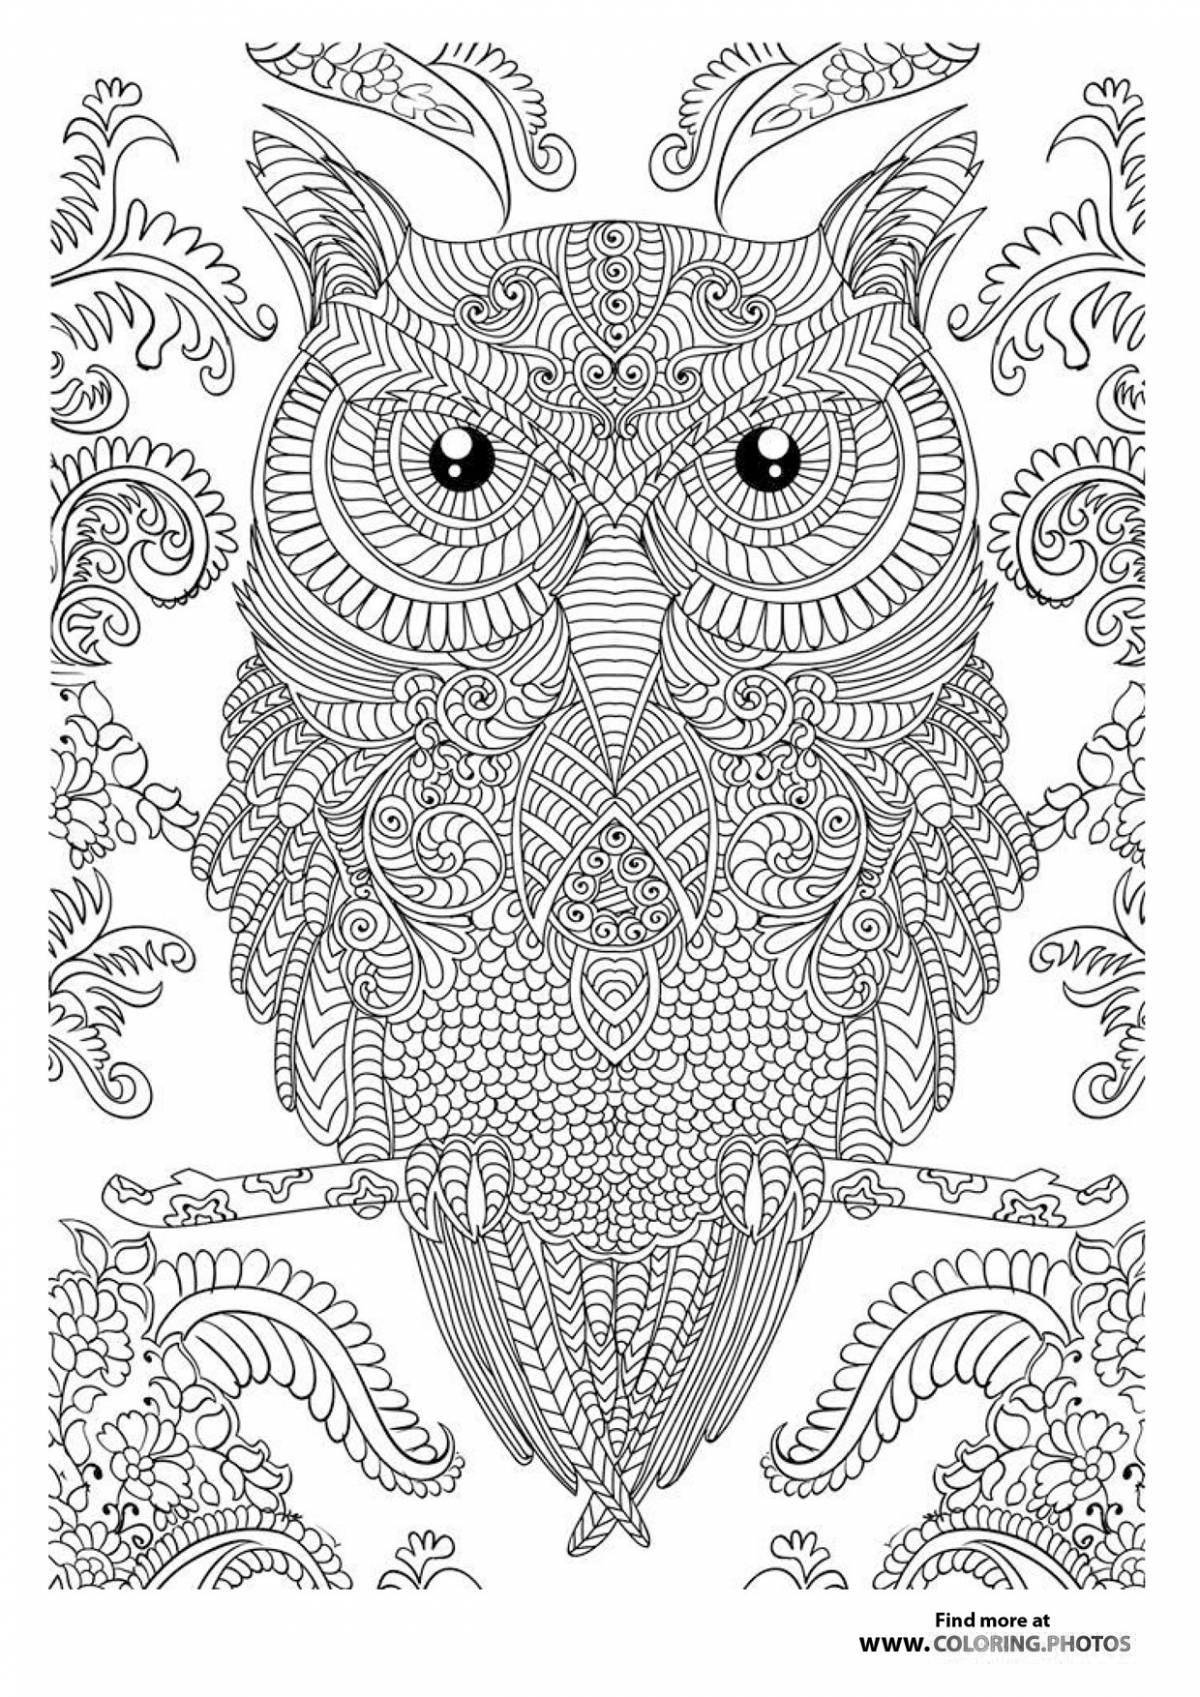 Художественная раскраска сложная сова